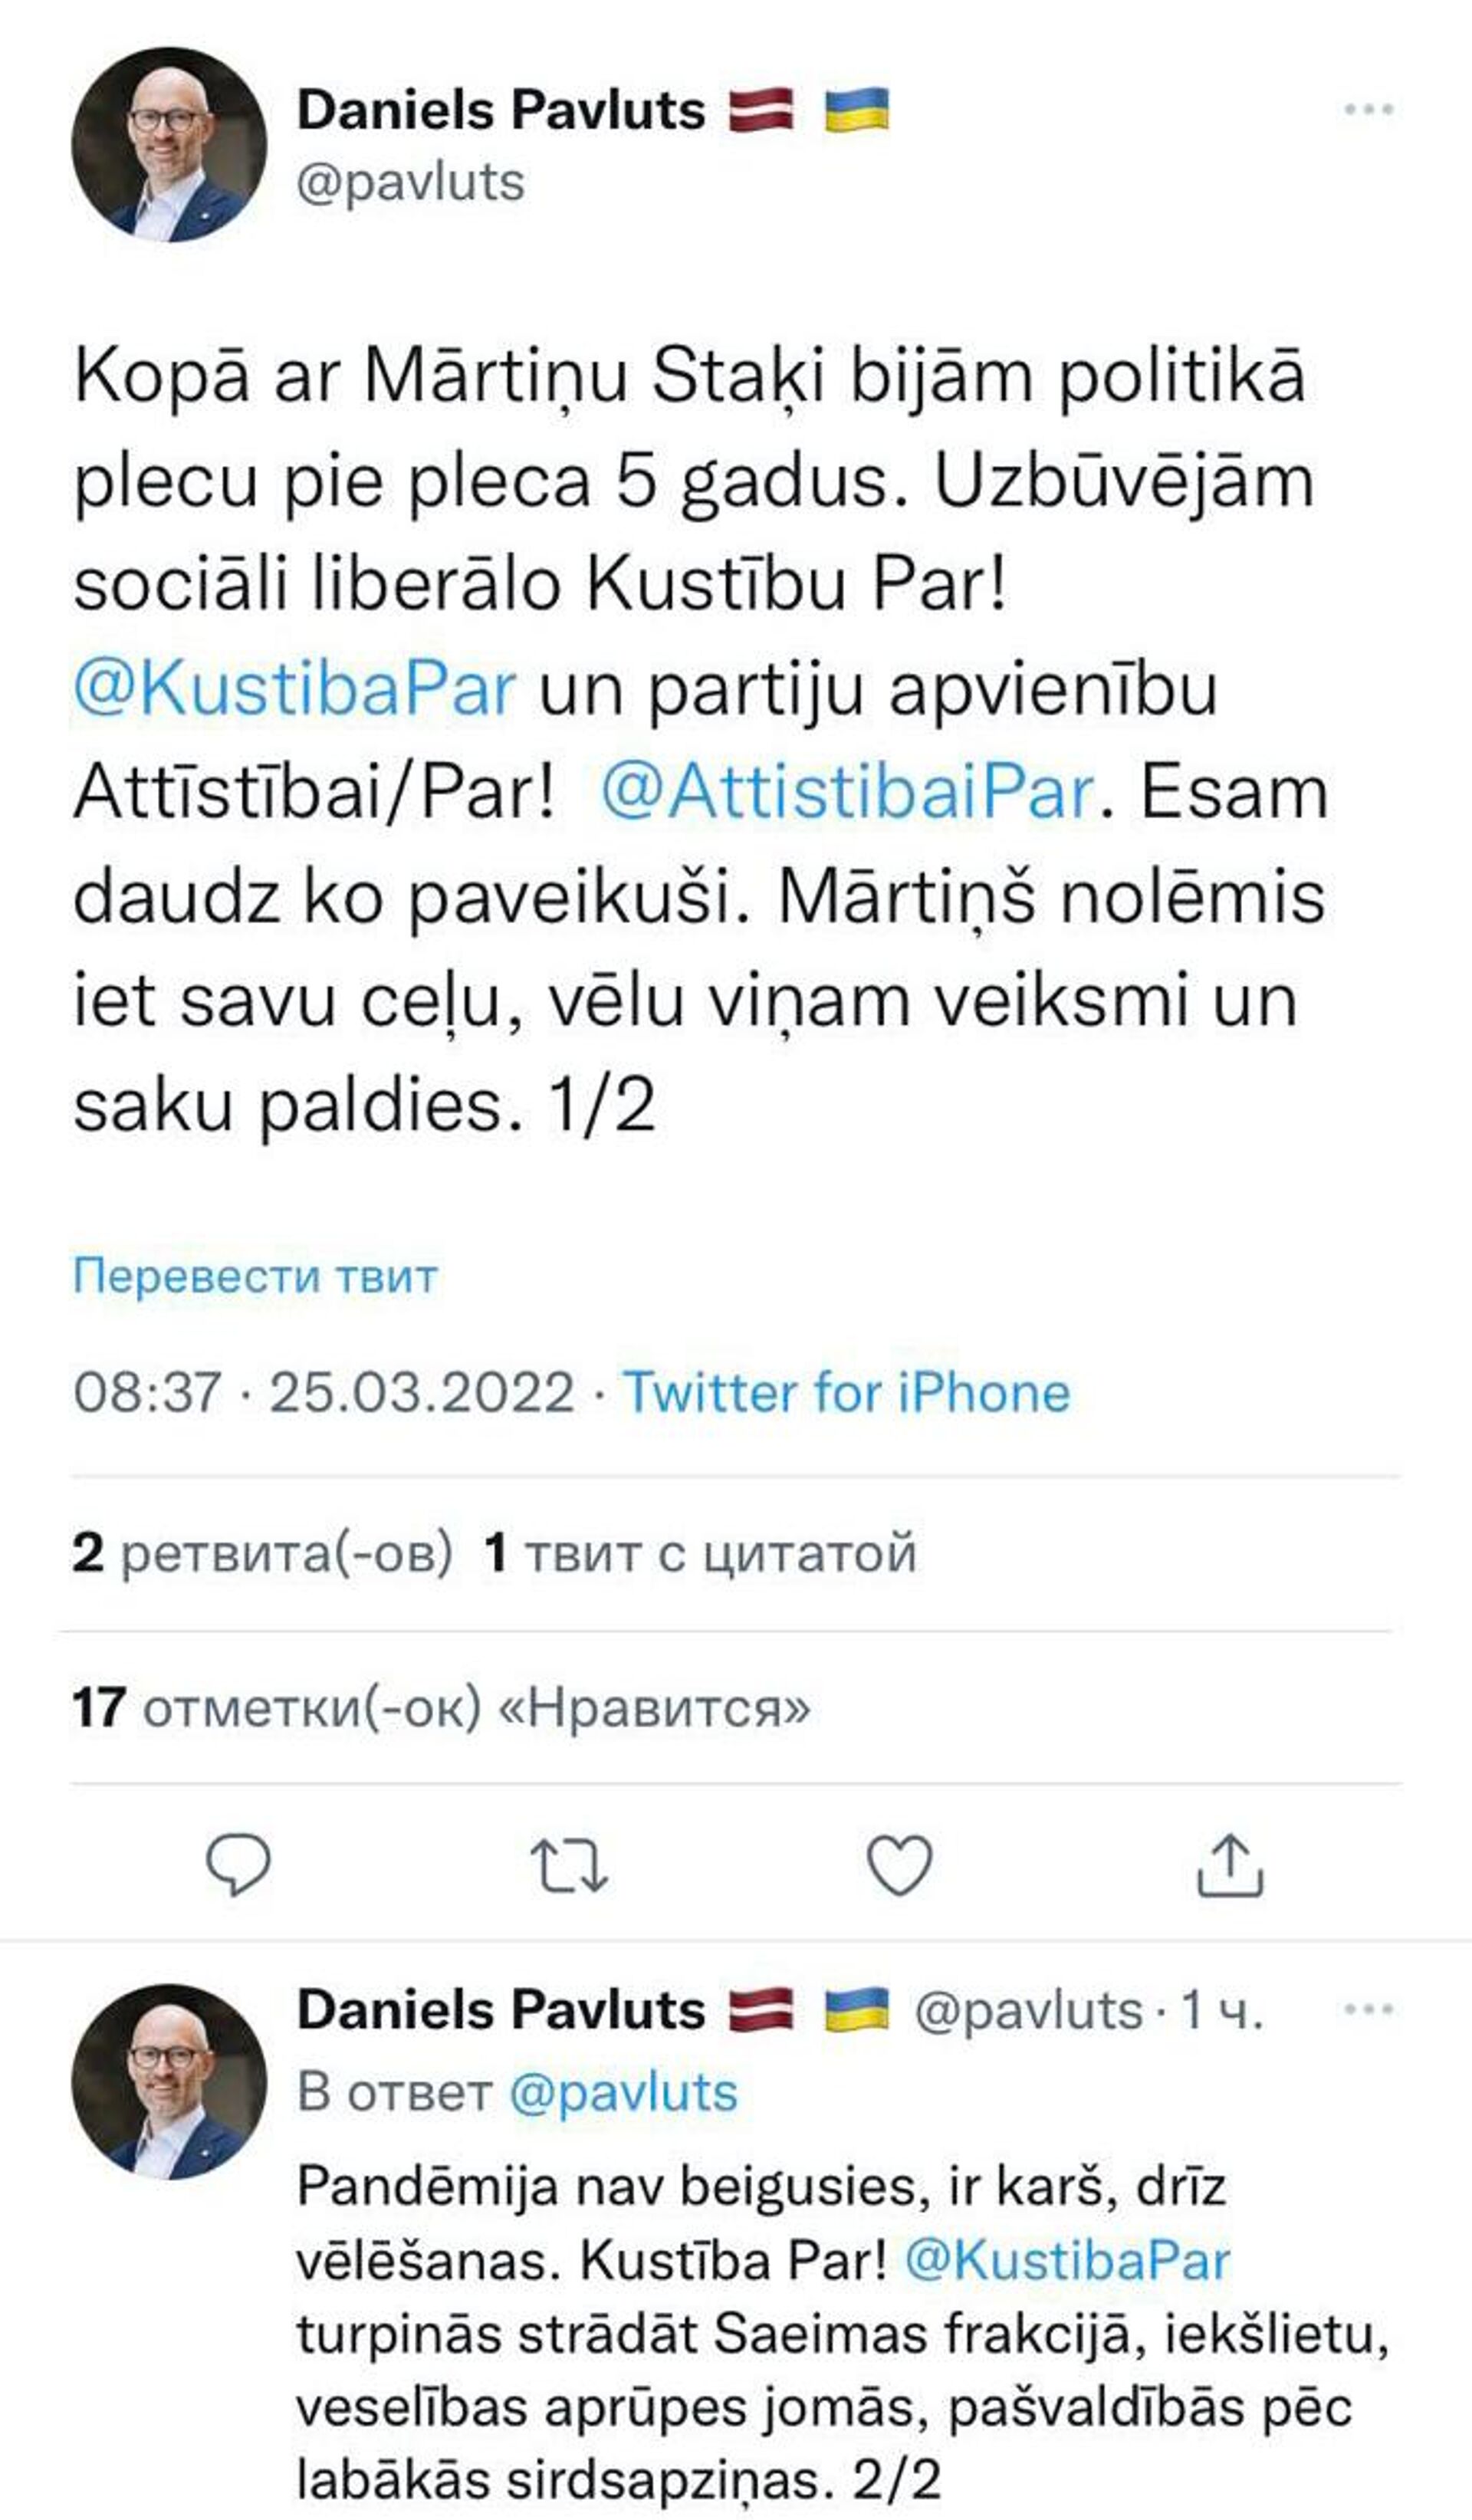 Скриншот поста в Twitter  - Sputnik Латвия, 1920, 25.03.2022